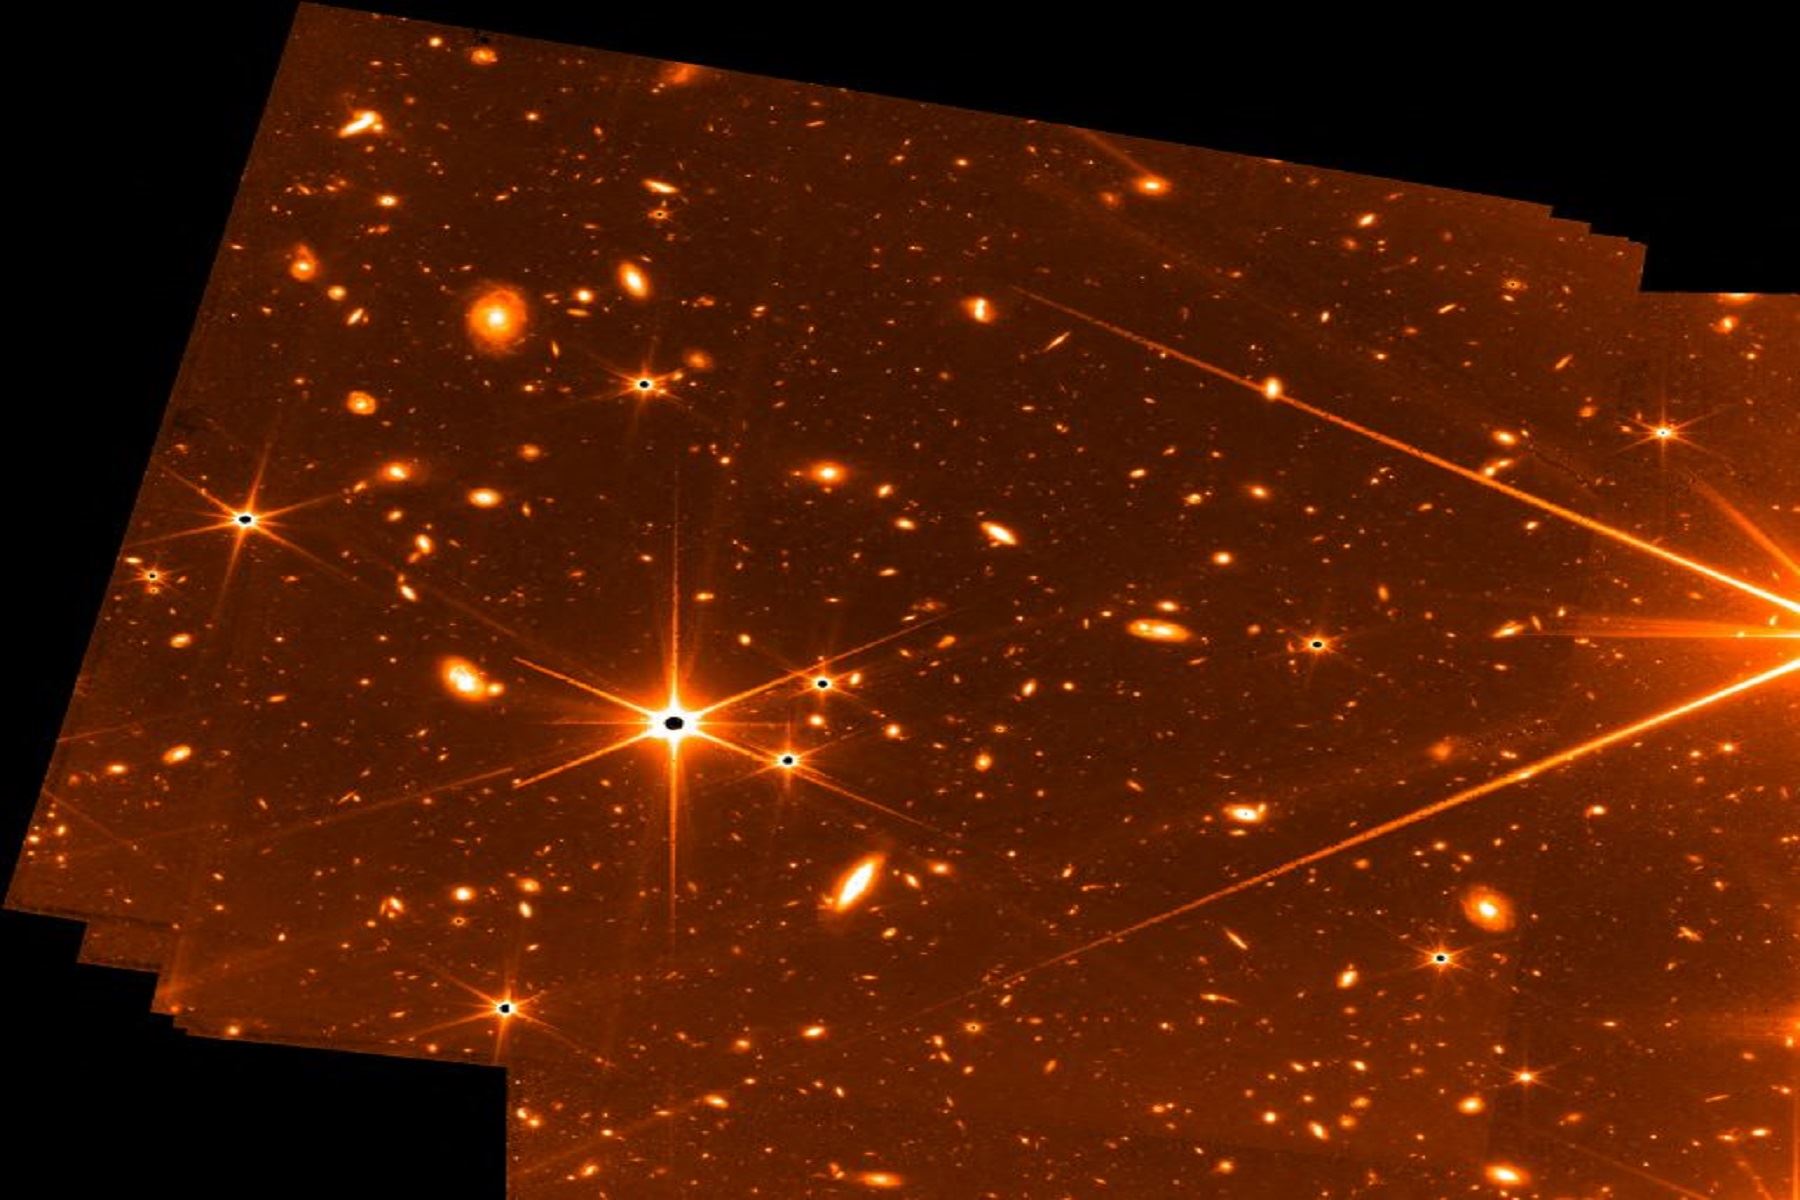 Galaxias, planetas y nebulosas son algunos de los objetivos del telescopio James Webb. Foto: AFP